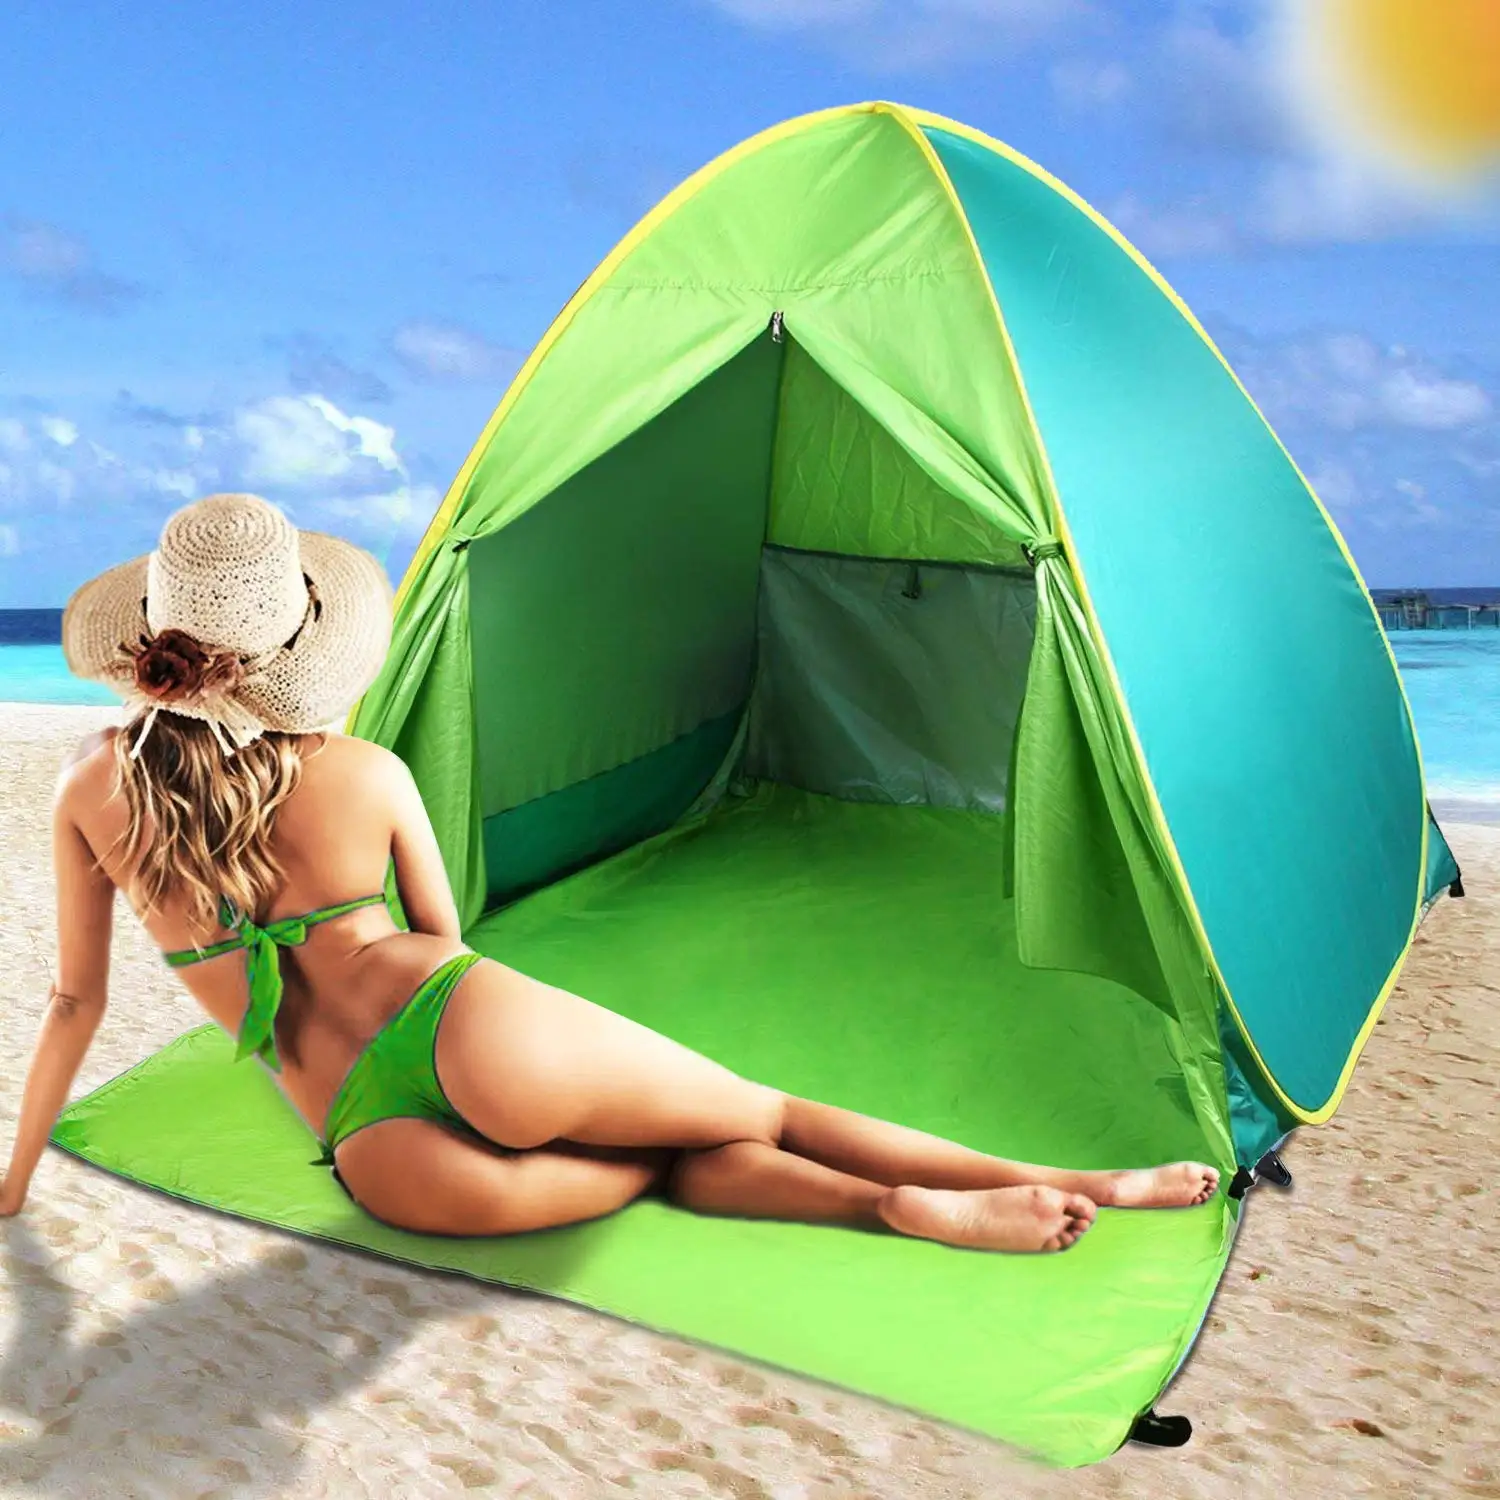 

SHOMORII Beach Tent,Pop Up Beach Shade, UPF 50+ Sun Shelter Instant Portable Tent Umbrella Baby Canopy Cabana with Carry Bag